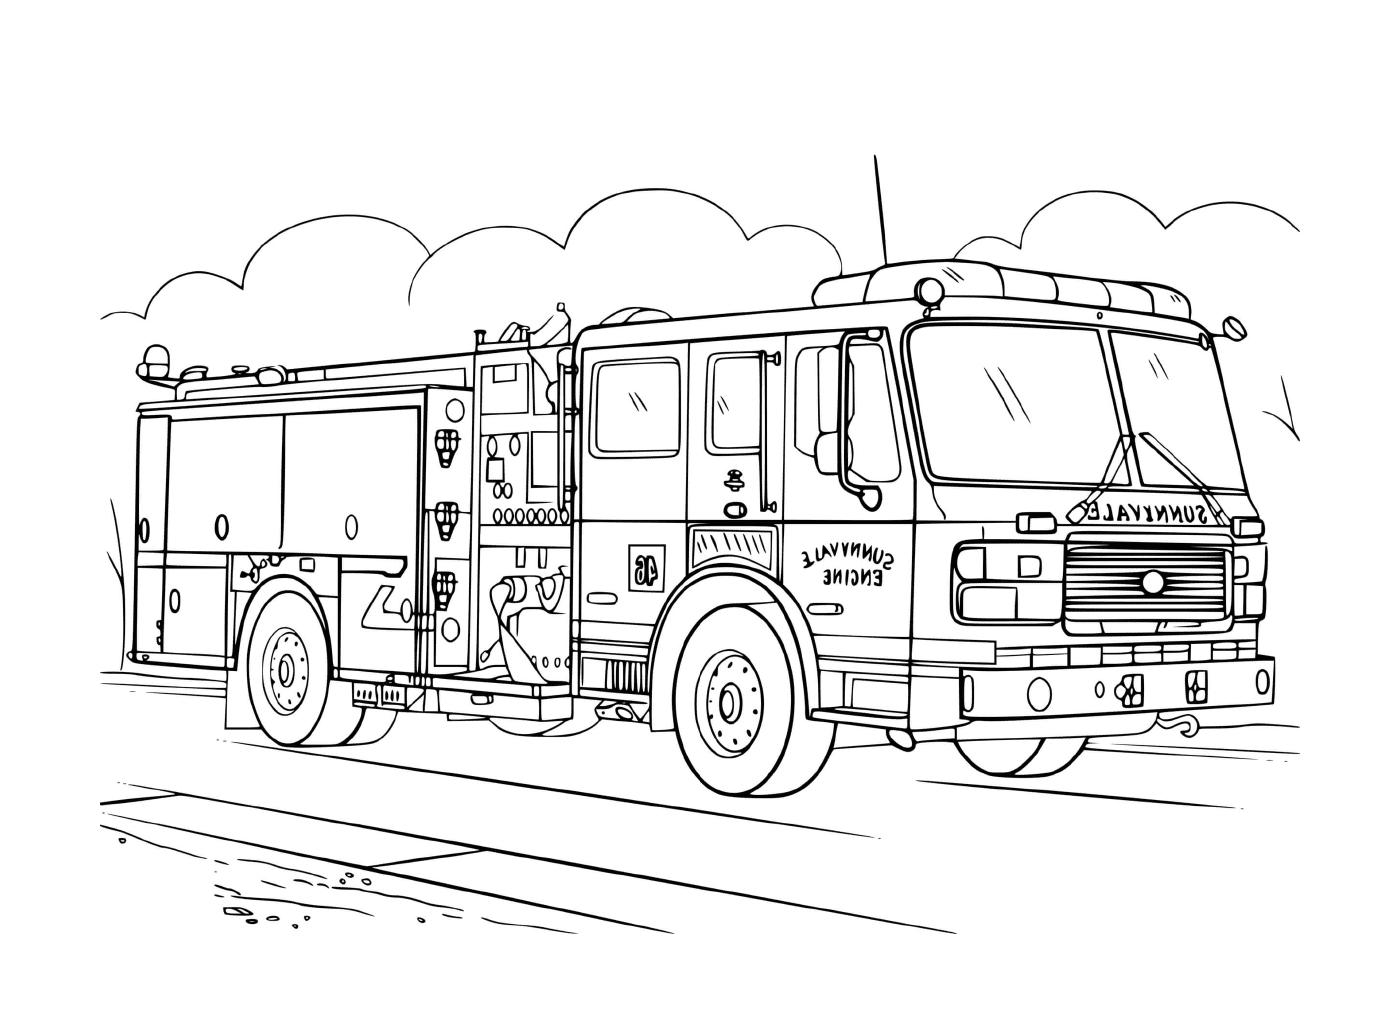  现实的消防车,油漆 